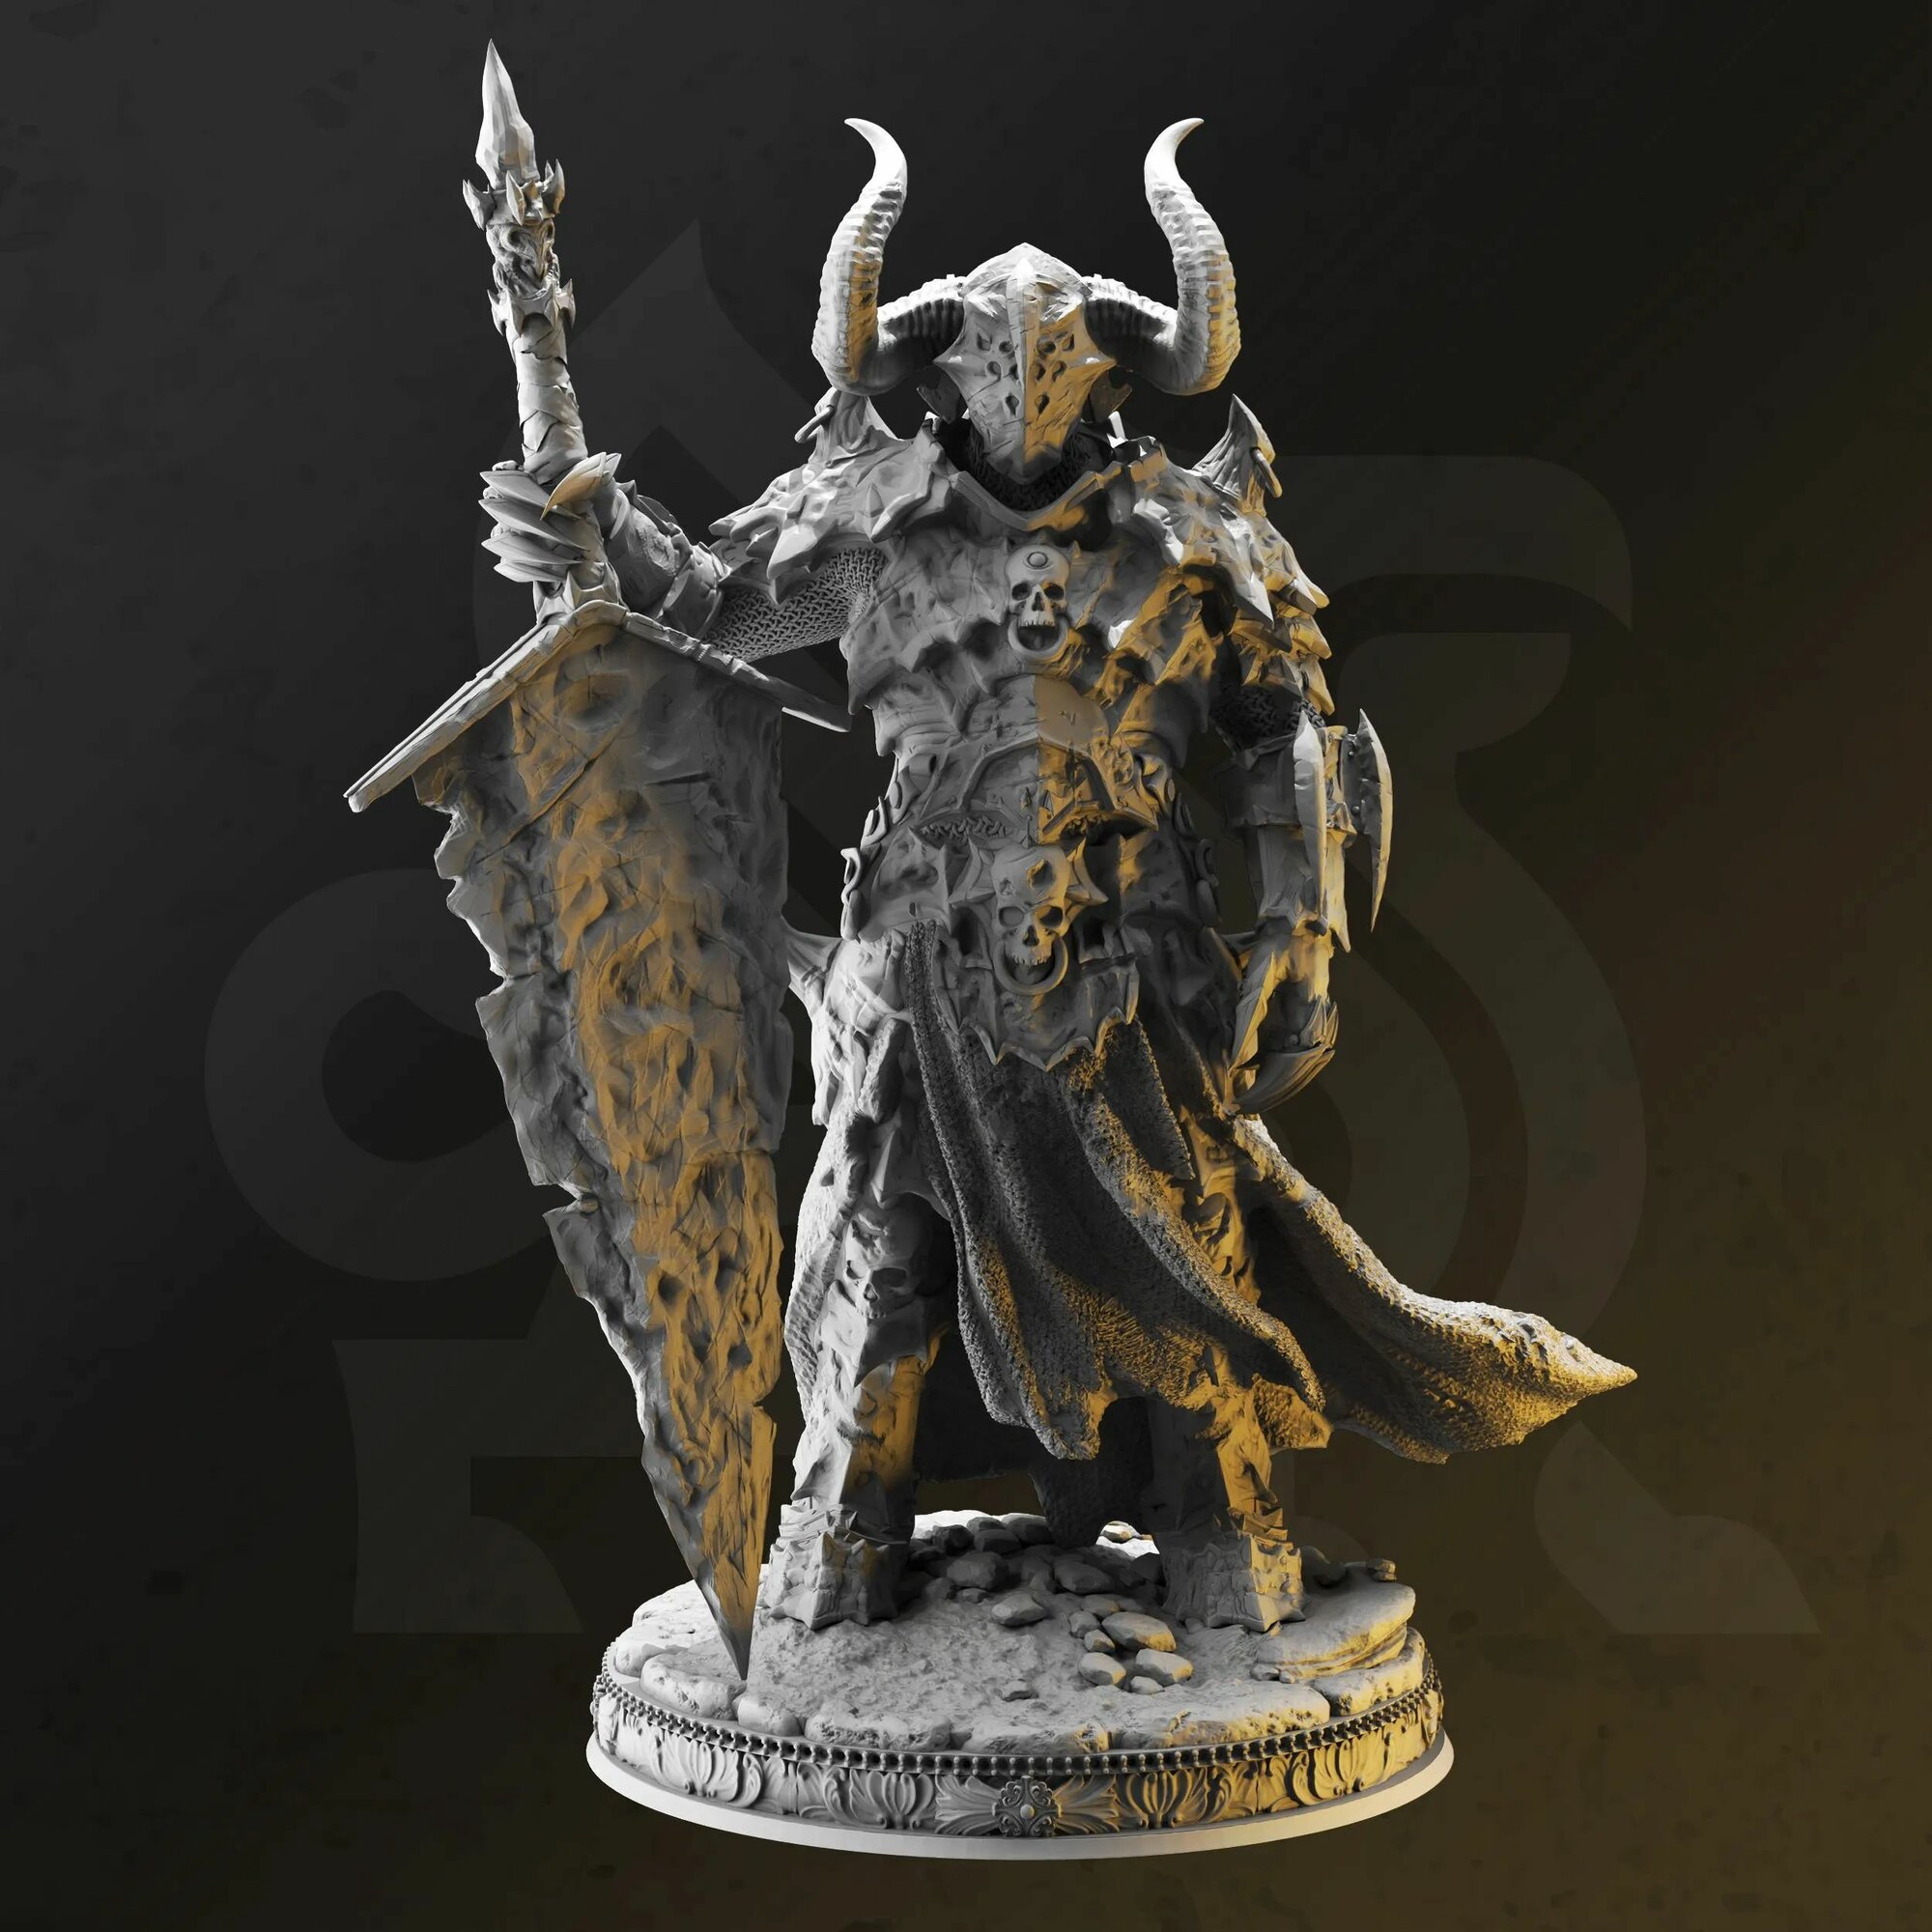 Фэнтези миниатюра рыцарь смерти (демон паладин) игровая фигурка для раскрашивания, база 25мм